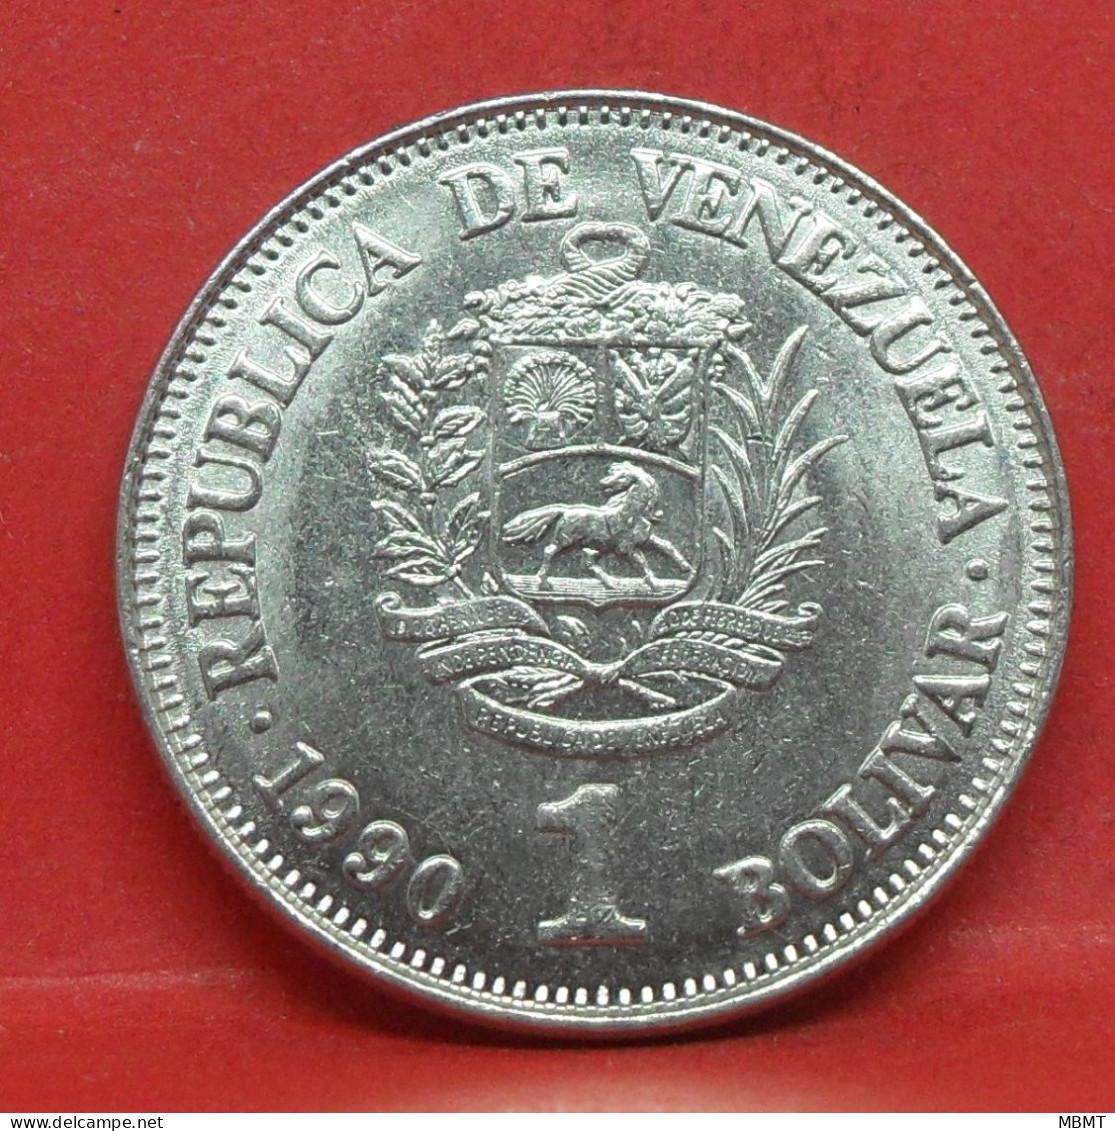 1 Bolivar 1990 - TTB - Pièce De Monnaie Venezuela - Article N°5540 - Venezuela